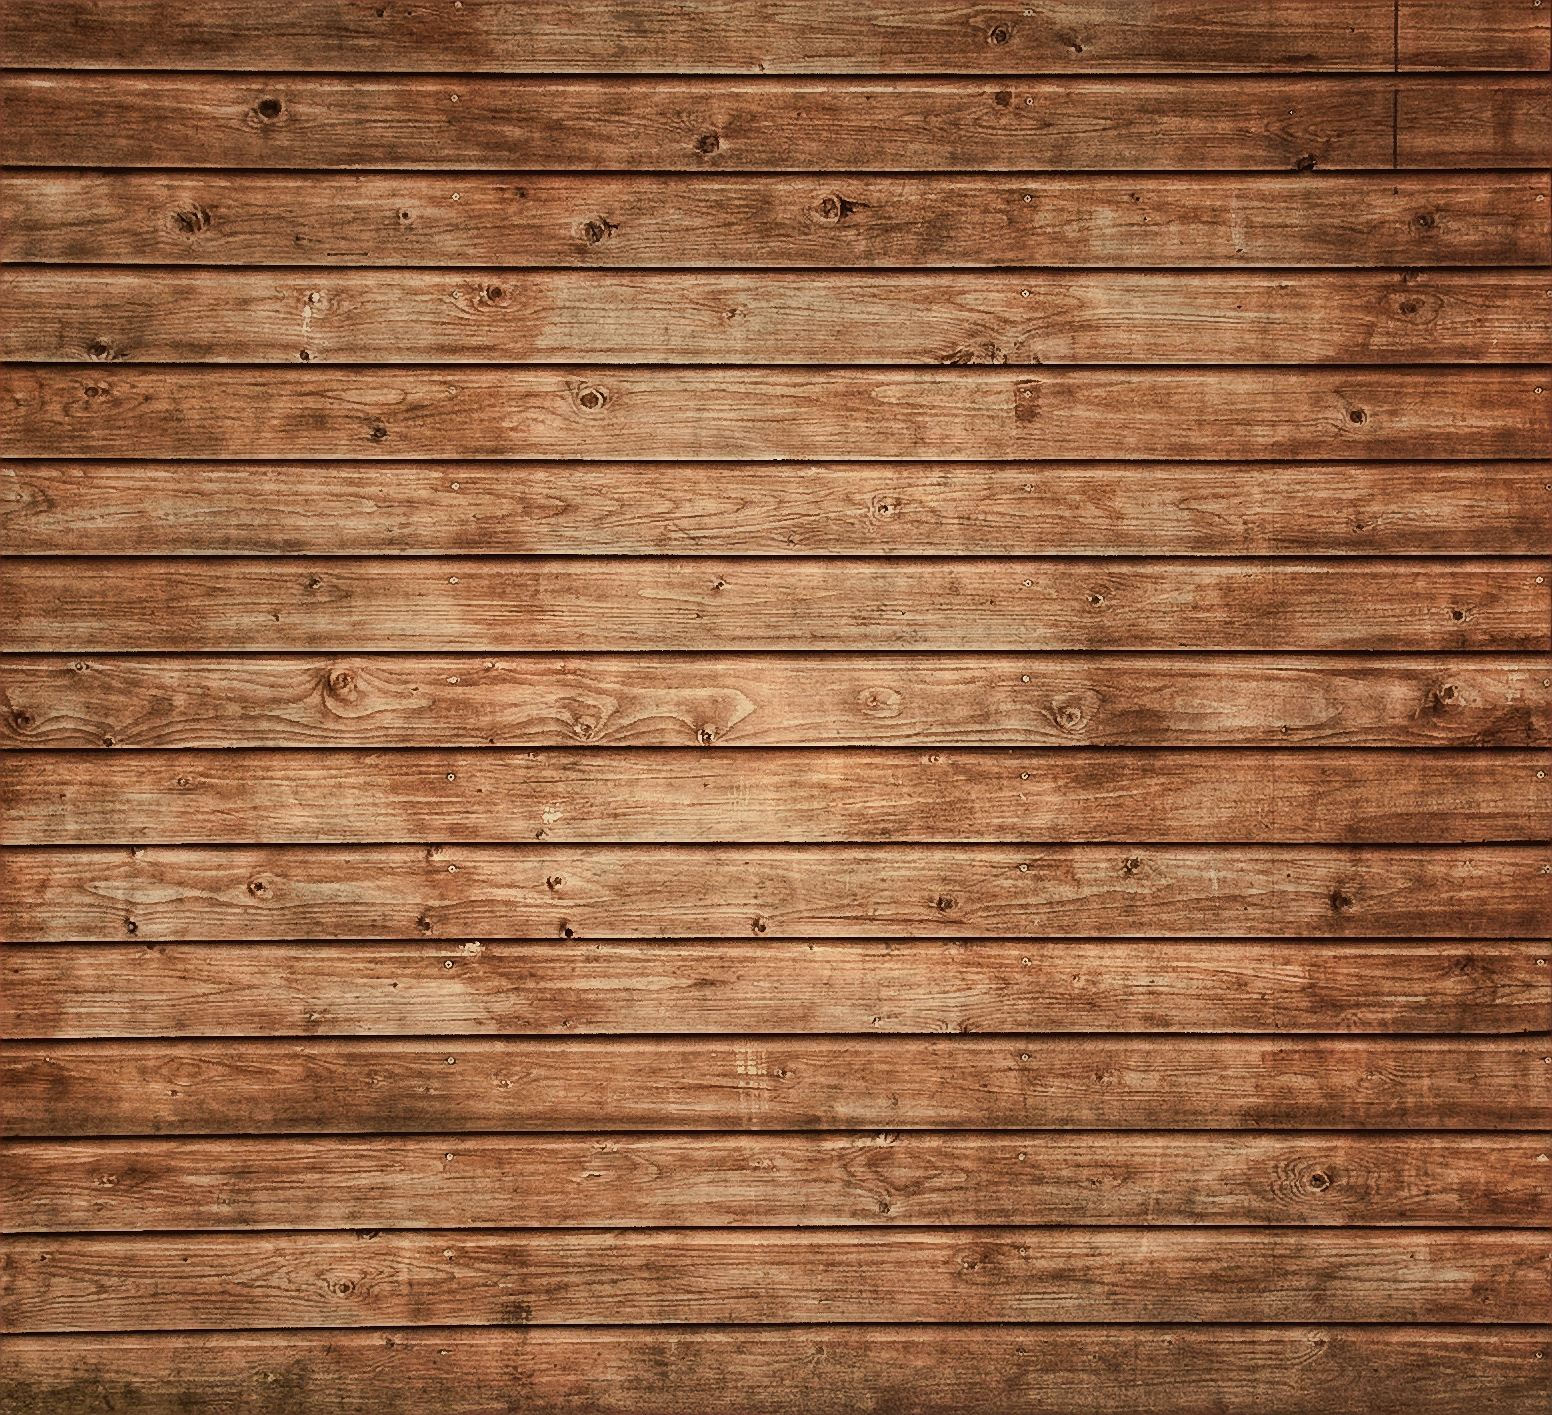 Nền gỗ đẹp miễn phí: Khám phá nền gỗ đẹp miễn phí để trang trí cho ngôi nhà của bạn. Hình ảnh sẽ cho thấy vẻ đẹp tuyệt vời của gỗ và sự tự nhiên và giản dị của nó.